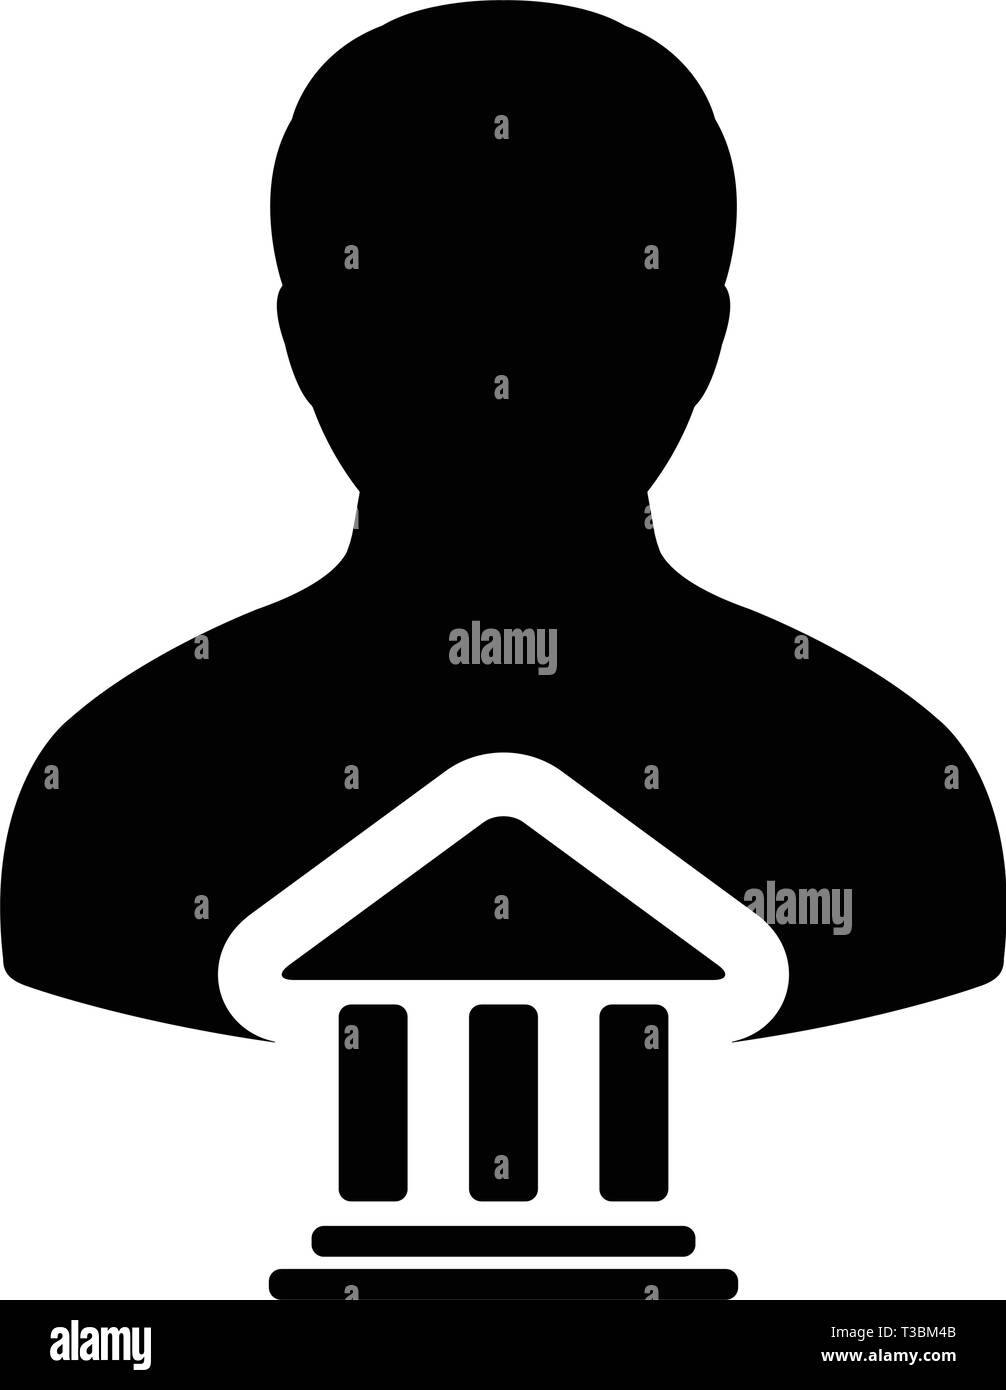 Bundesregierung Symbol Vektor mit männliche Person Profil Avatar mit Gebäude Symbol für Banking und Finance in Glyph Piktogramm Abbildung Stock Vektor